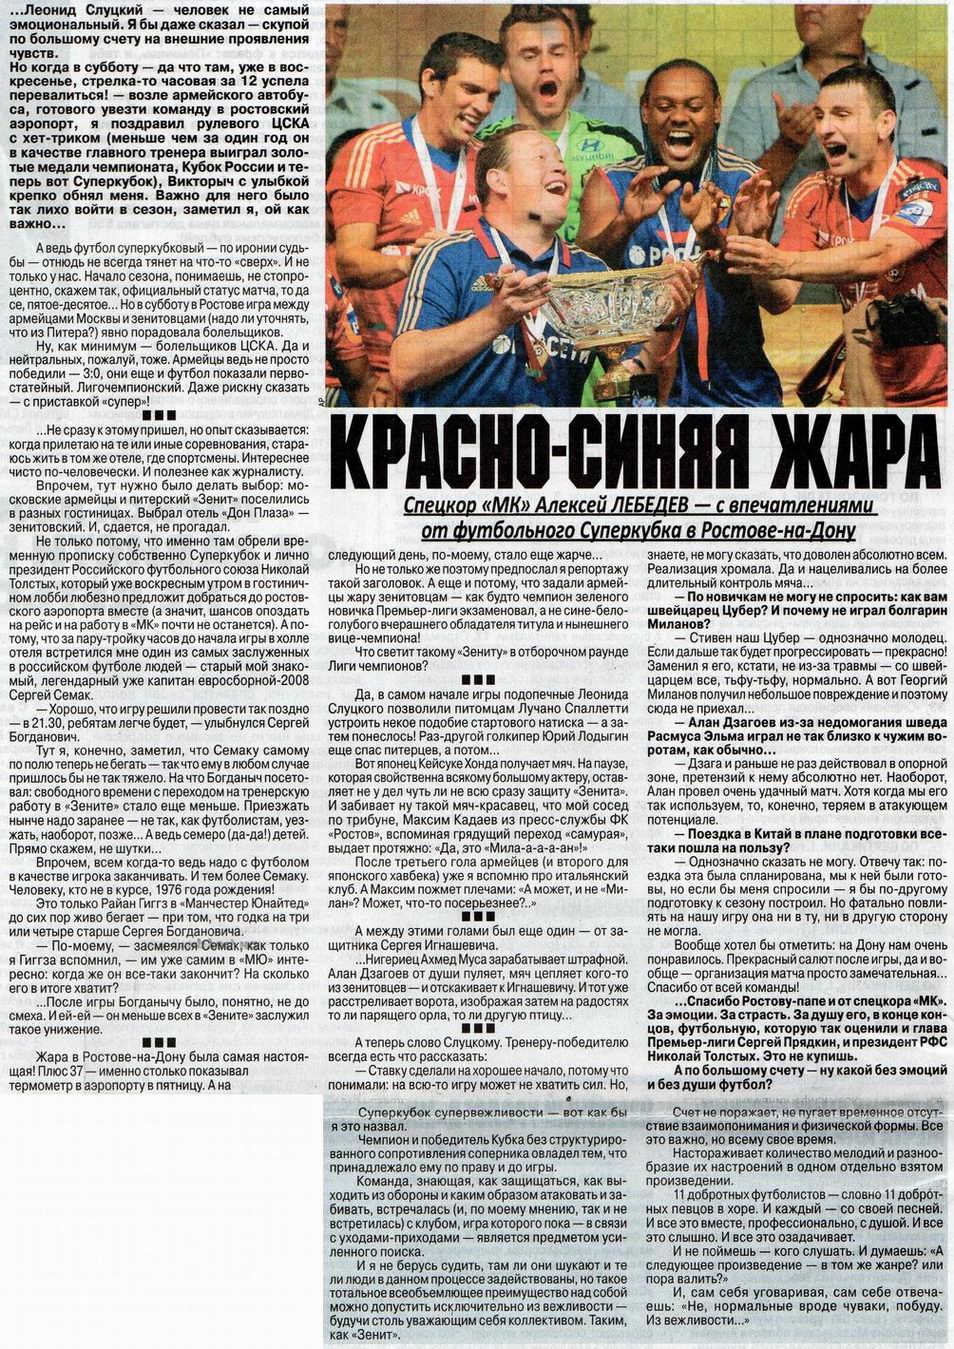 2013-07-13.CSKA-Zenit.5